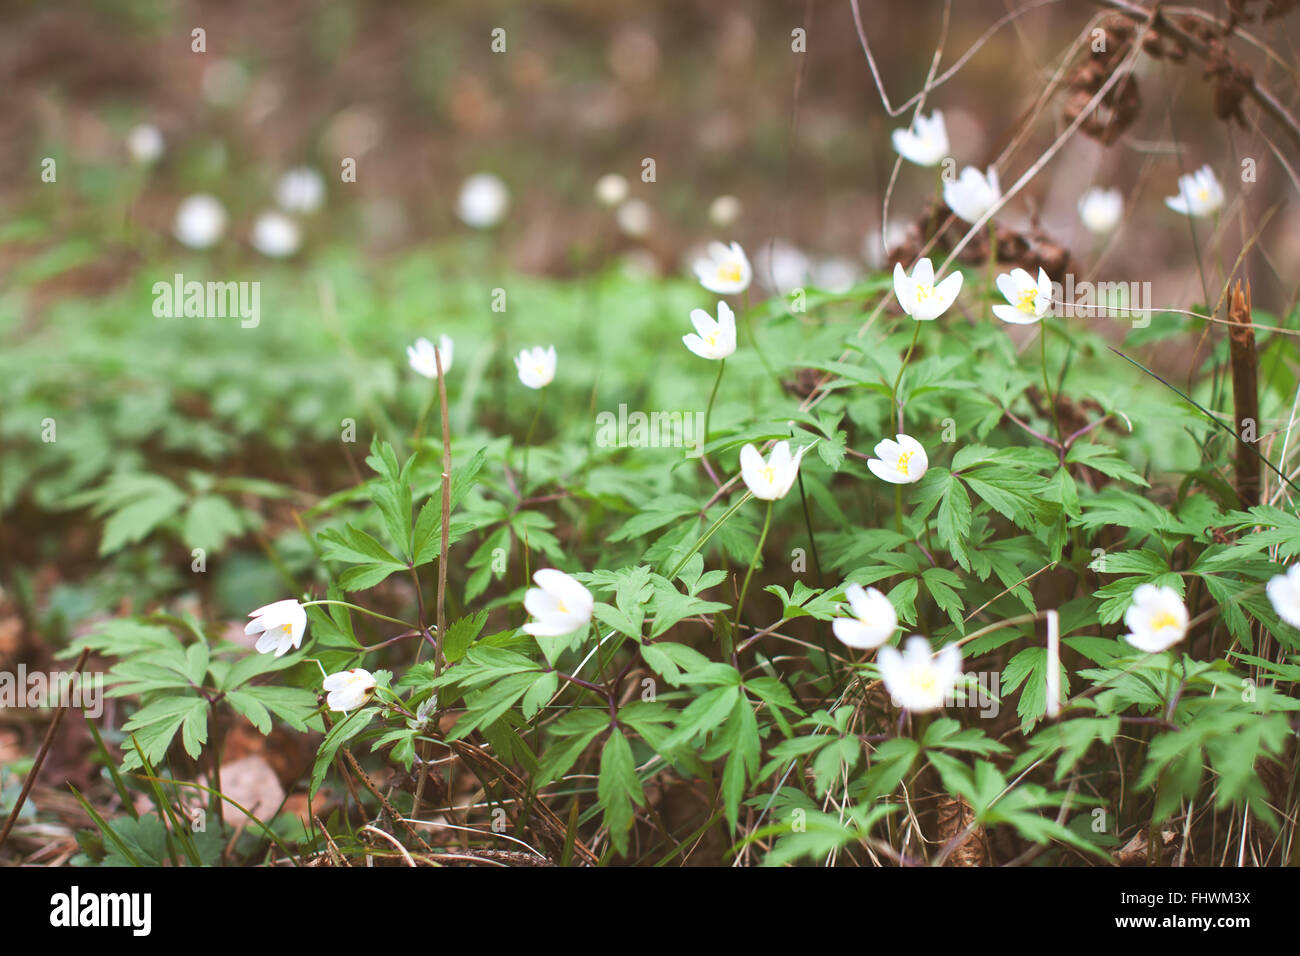 Anémone blanche fleurs en croissance à l'état sauvage dans une forêt au printemps. Image fleurs stock doux Banque D'Images